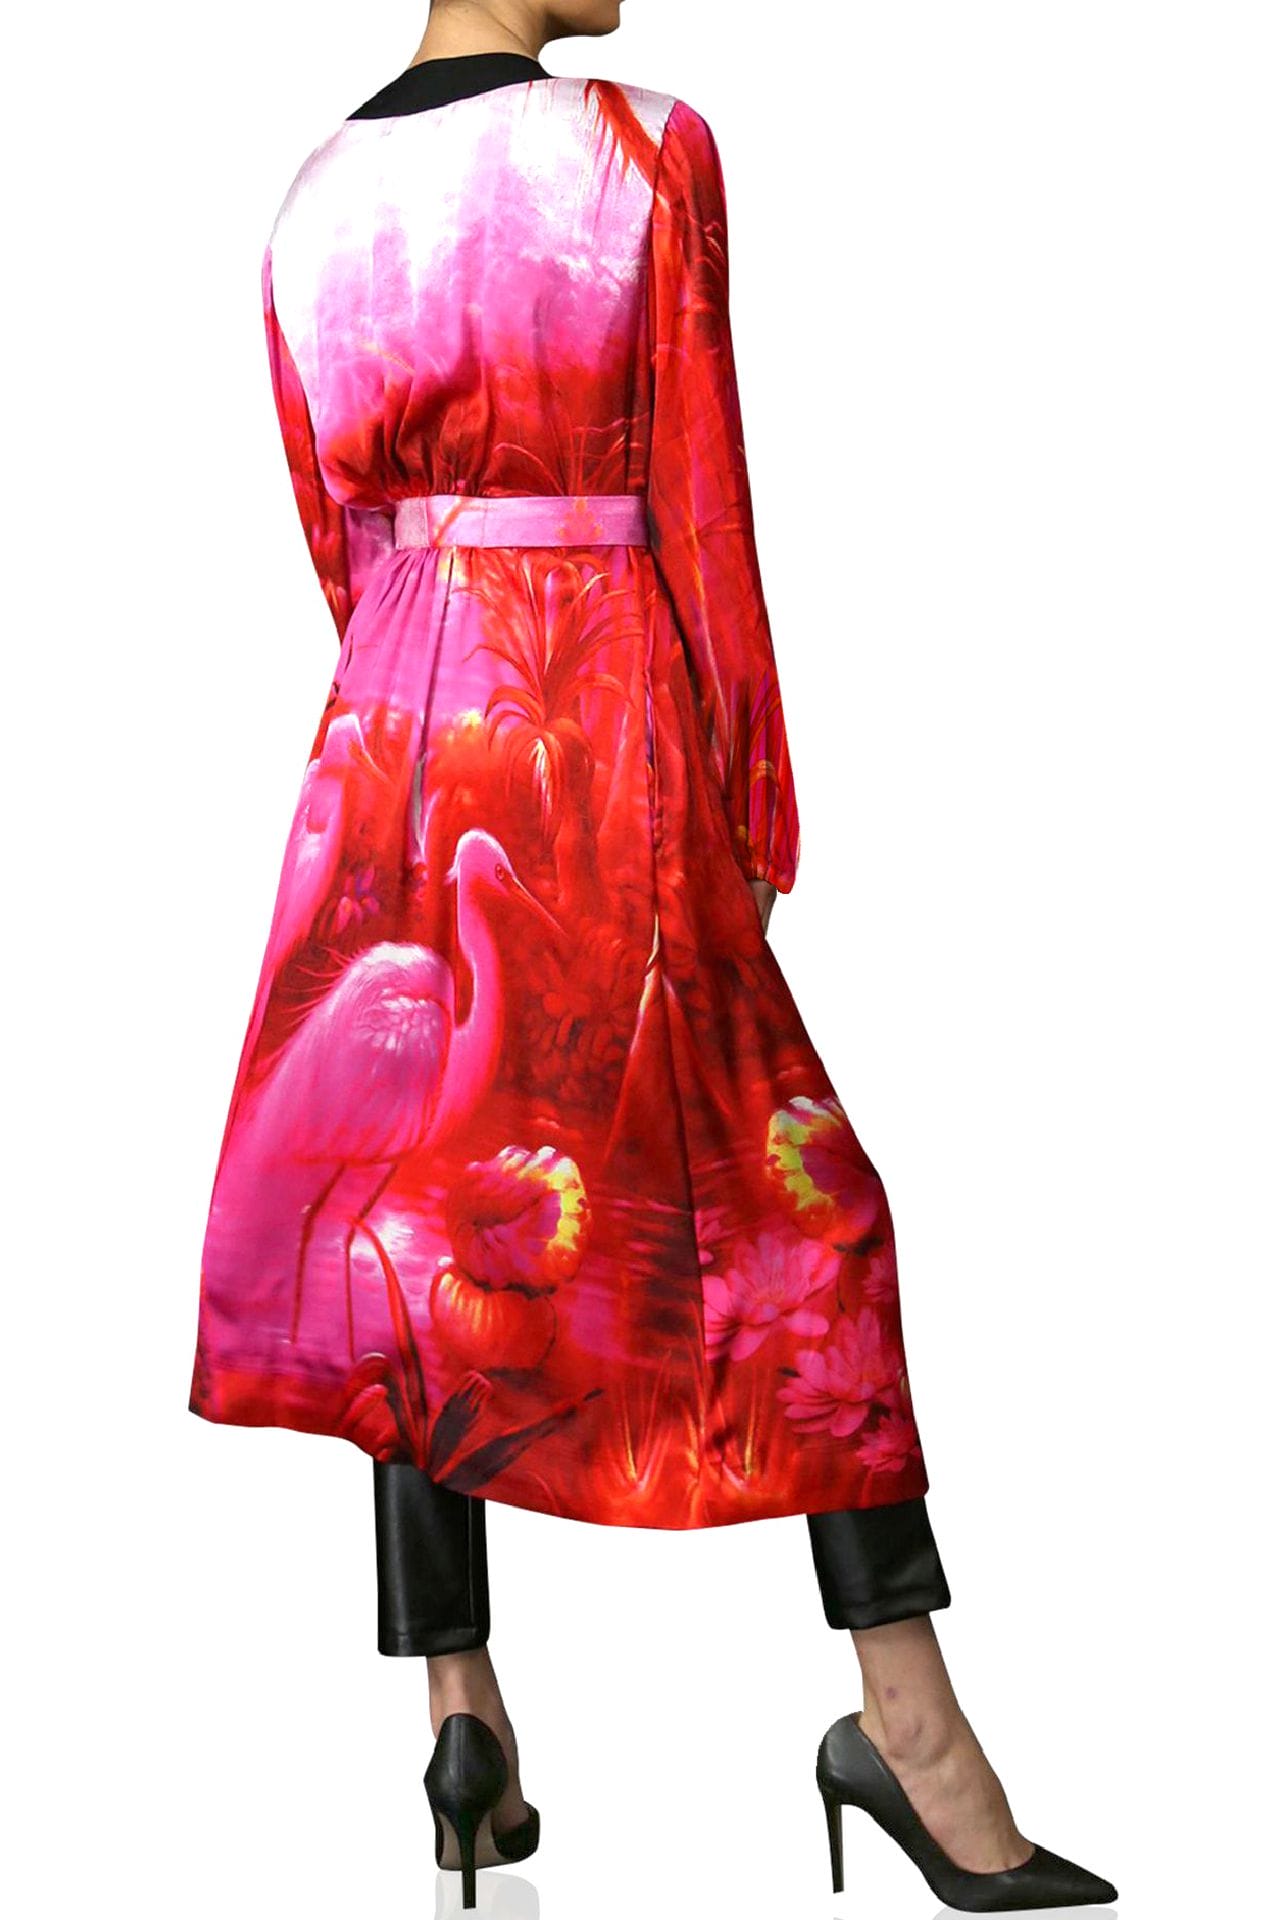 "Kyle X Shahida" "plus size long kimono" "robe silk kimono" "belted kimono" "pink silk robe"